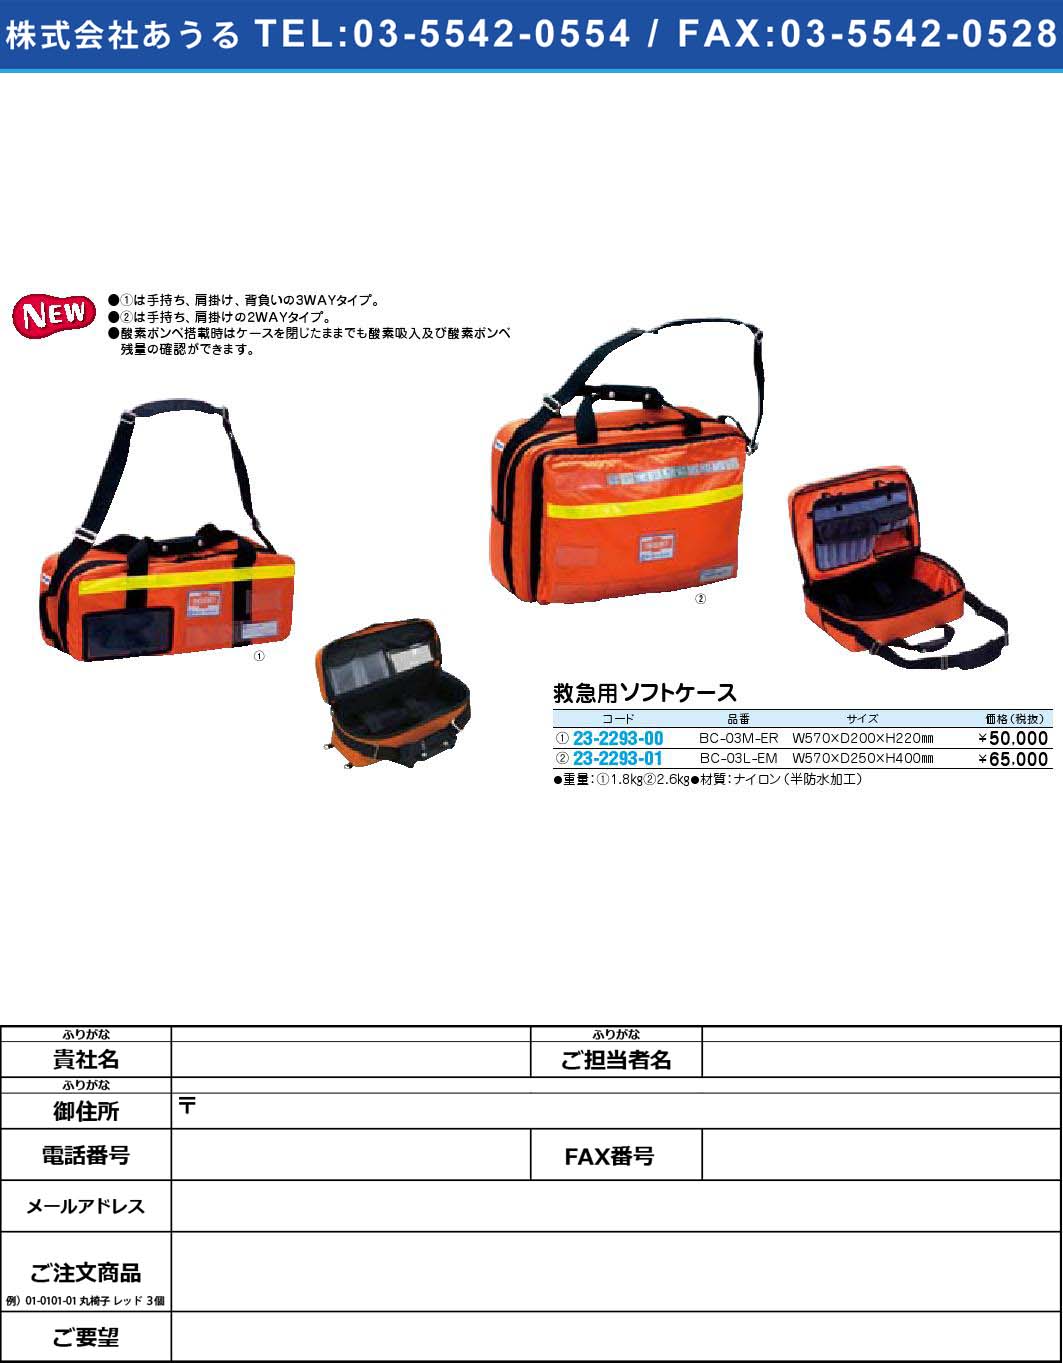 救急用ソフトケース BC-03M-ER(23-2293-00)【1個単位】